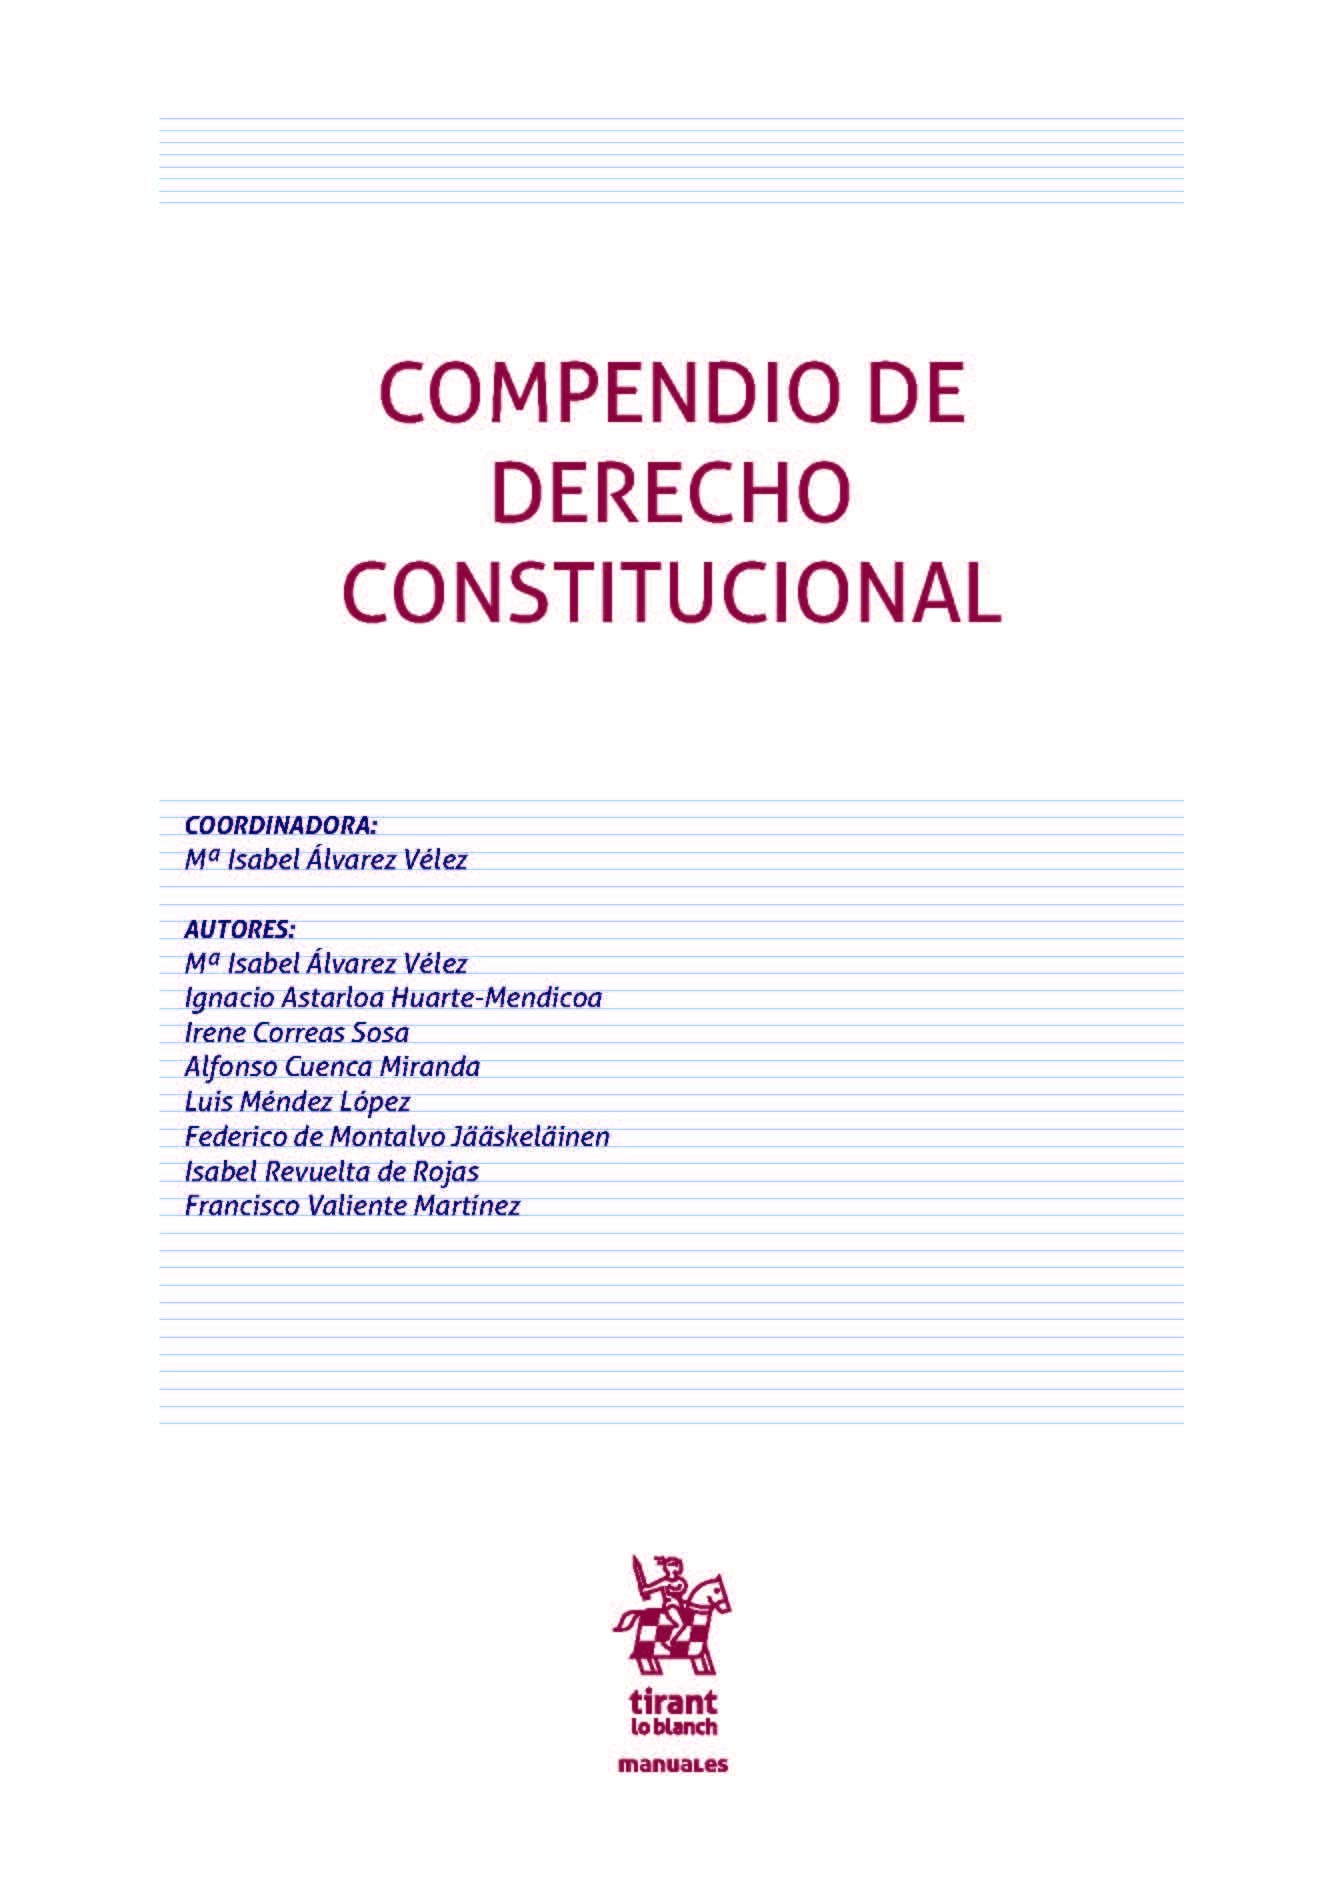 COMPENDIO DE DERECHO CONSTITUCIONAL 2022- ISABEL ALVAREZ VELEZ -TIRANT